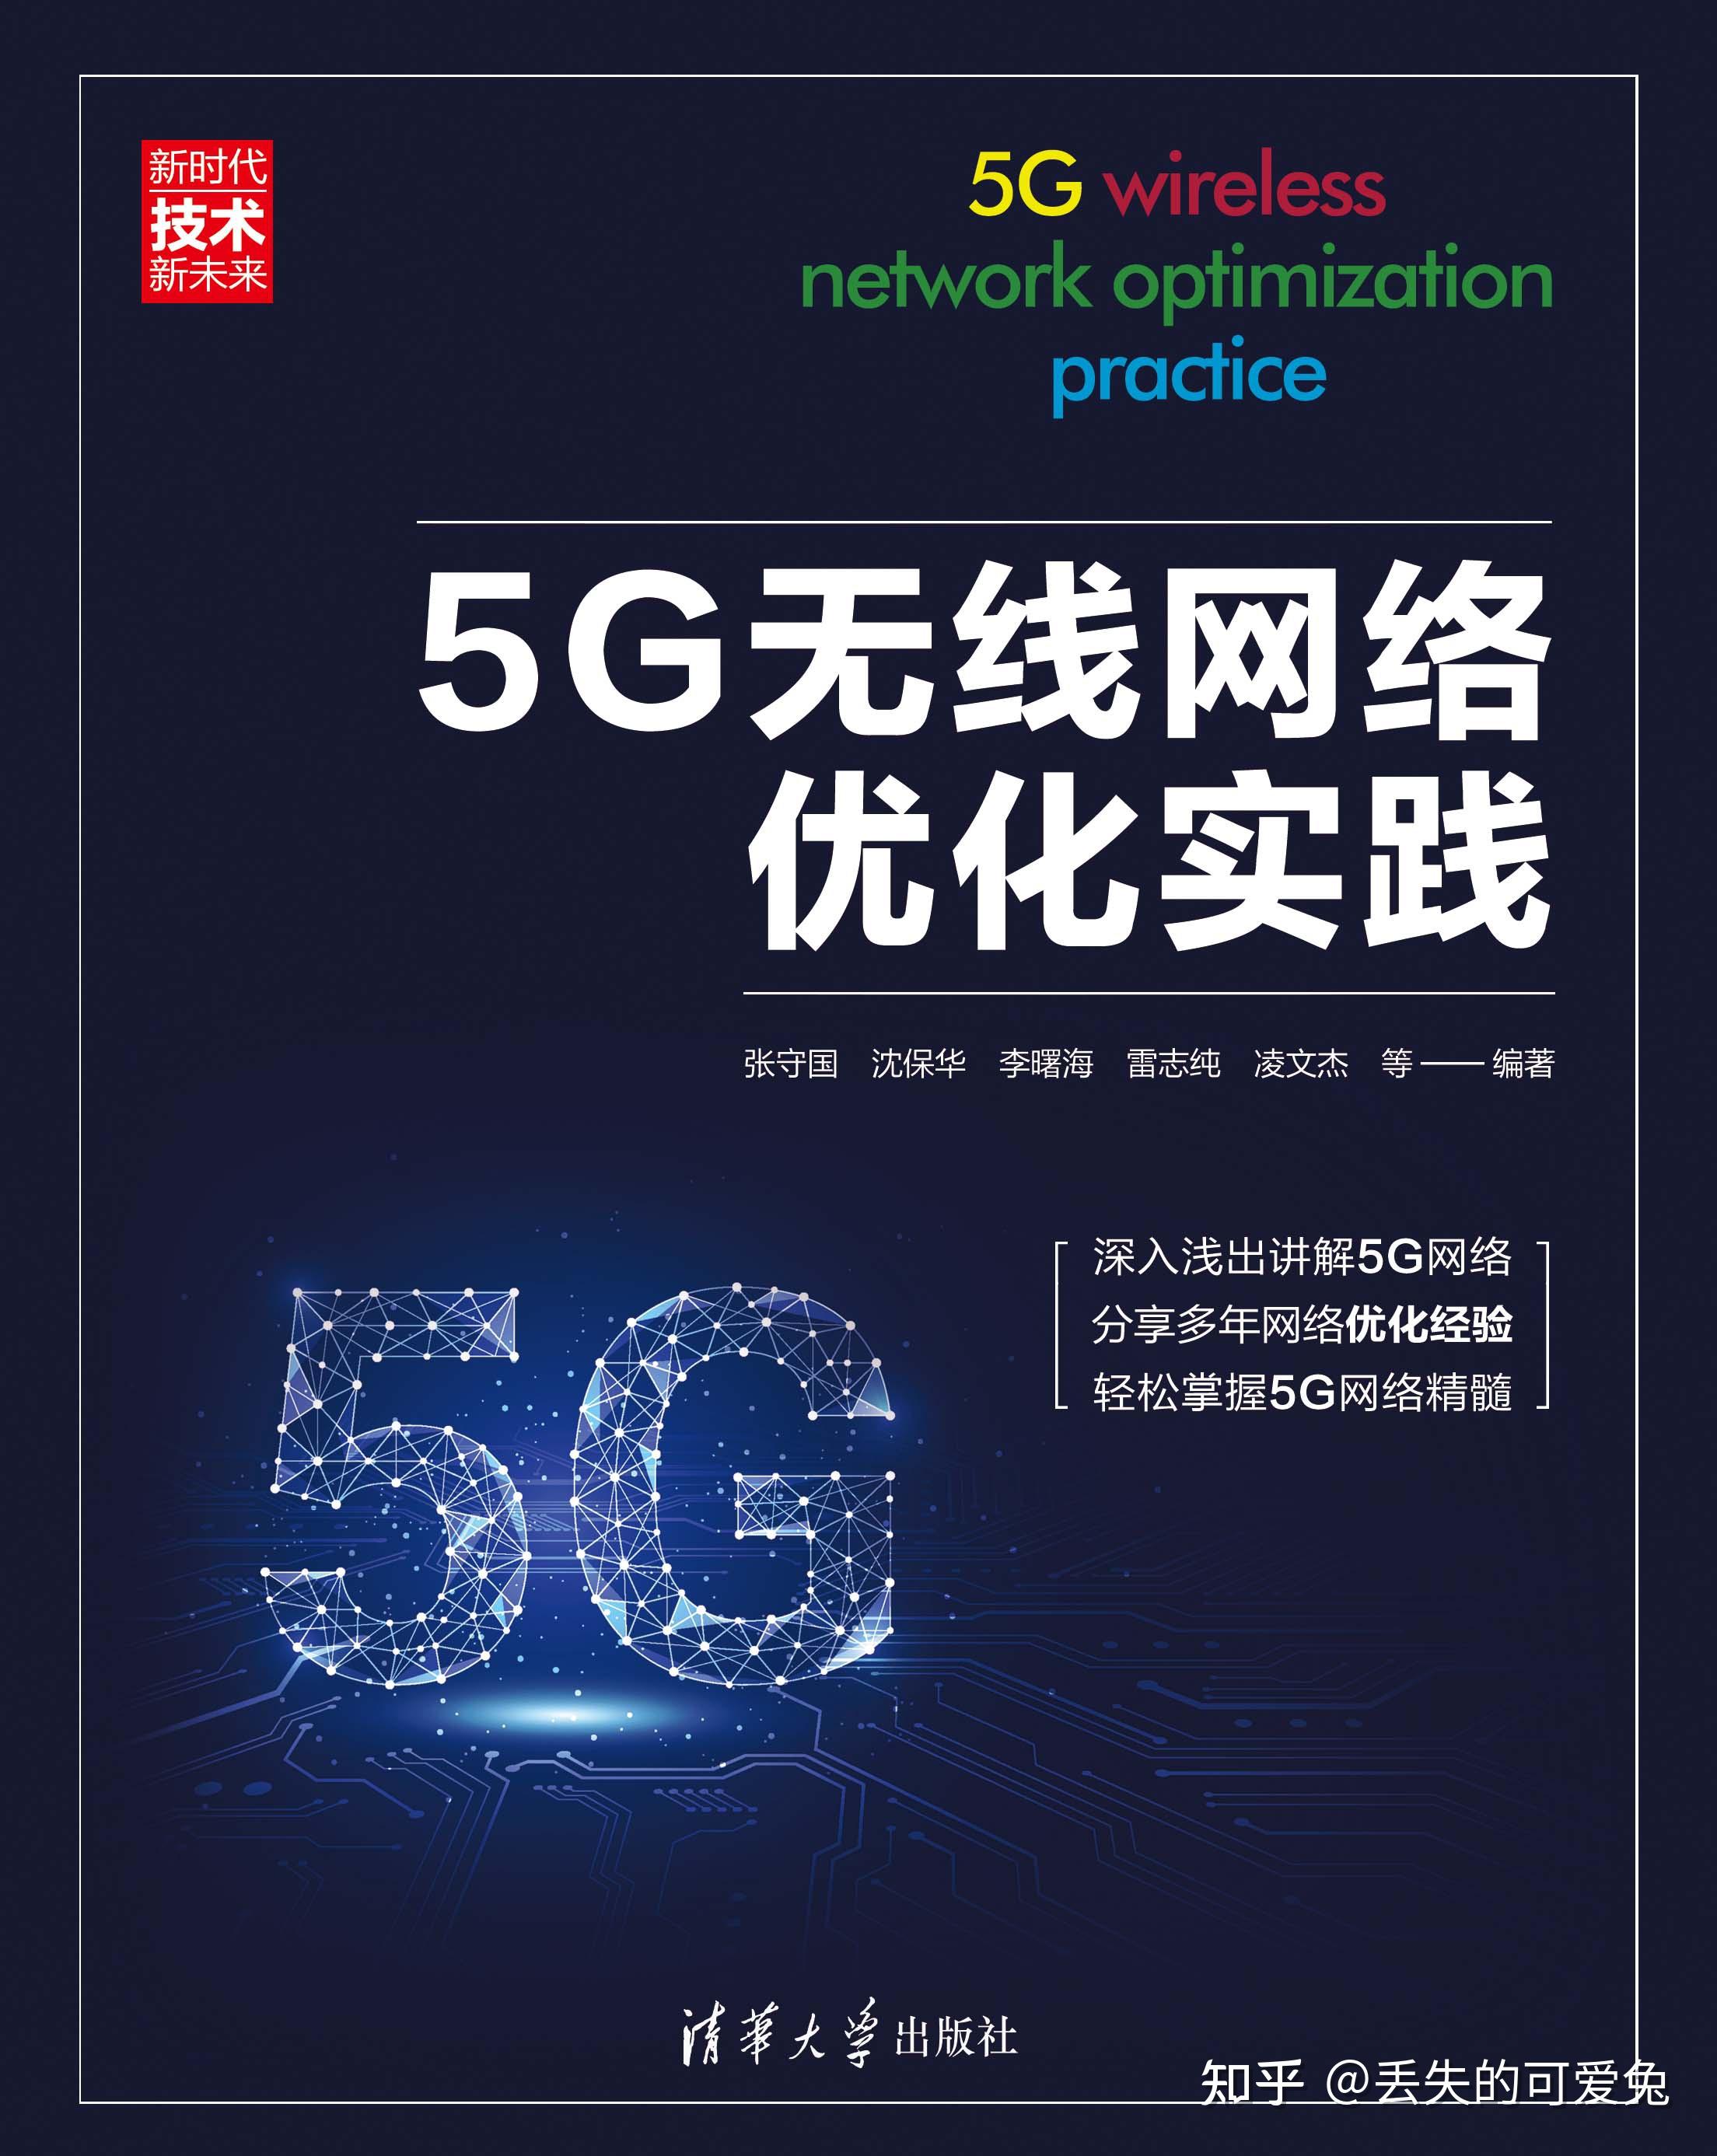 5G 网络：速度、延迟、连接密度和可靠性的全方位提升  第10张